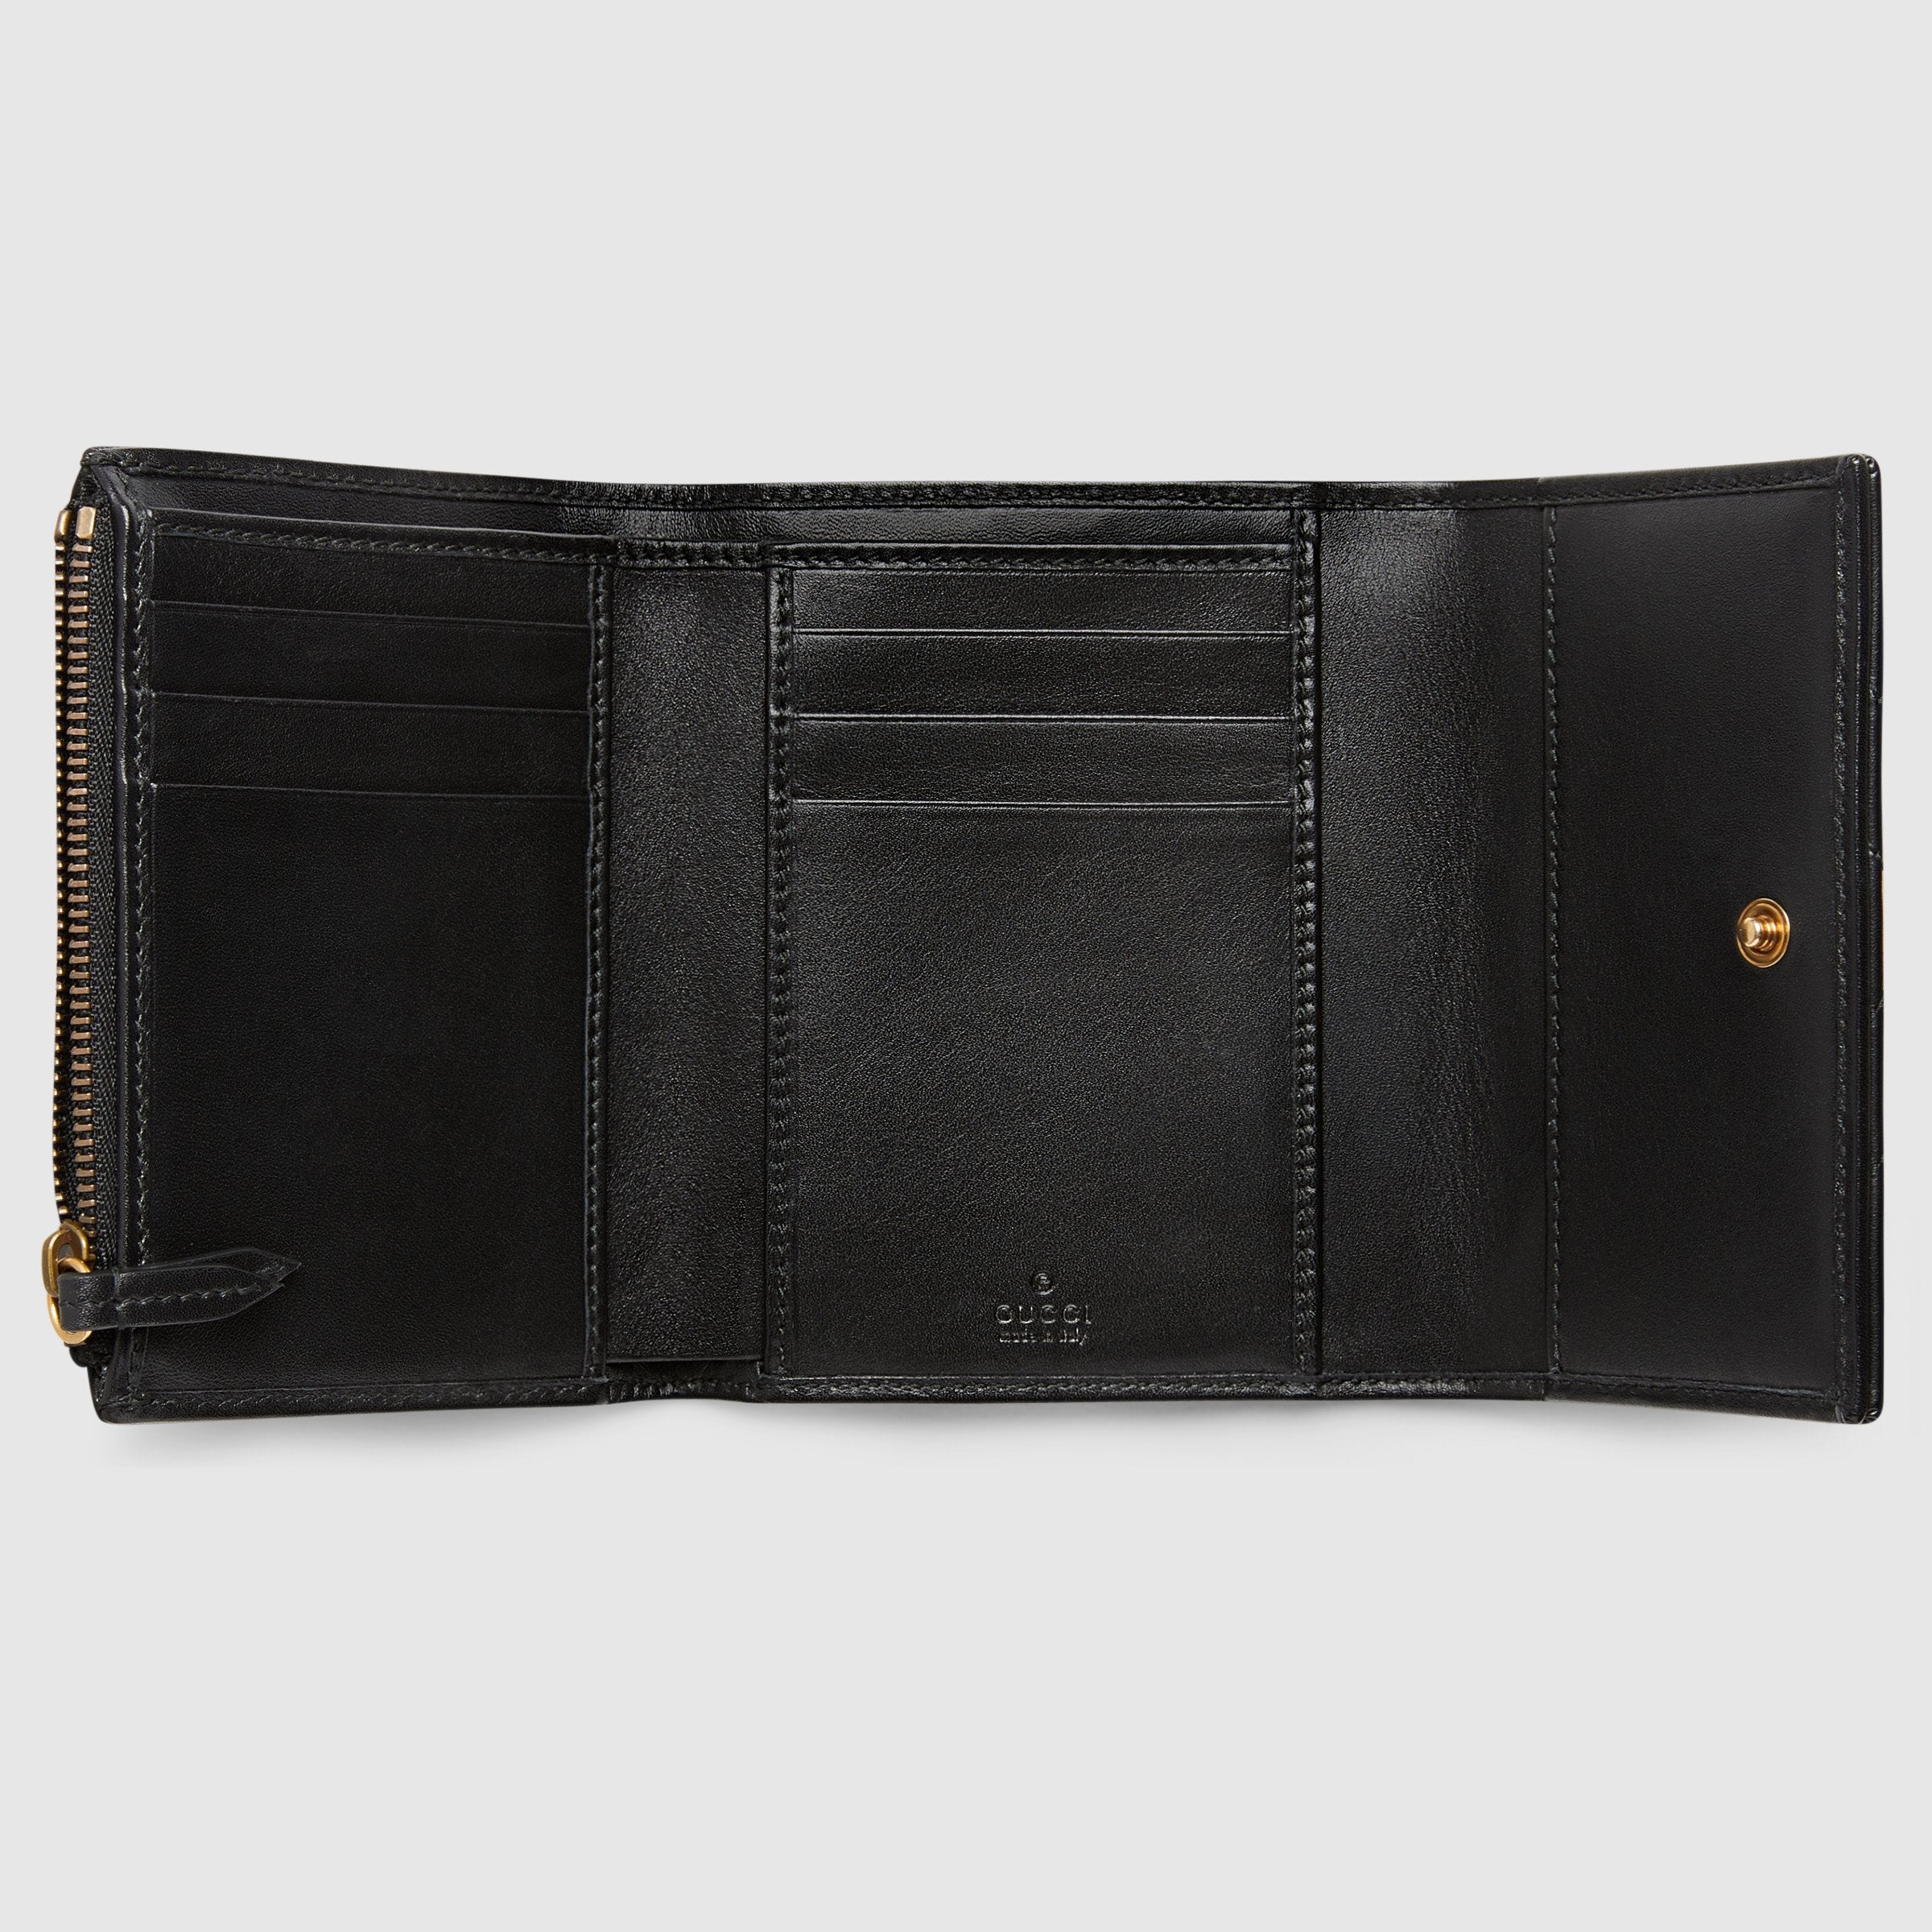 Gucci GG Marmont Matelassé Wallet Black